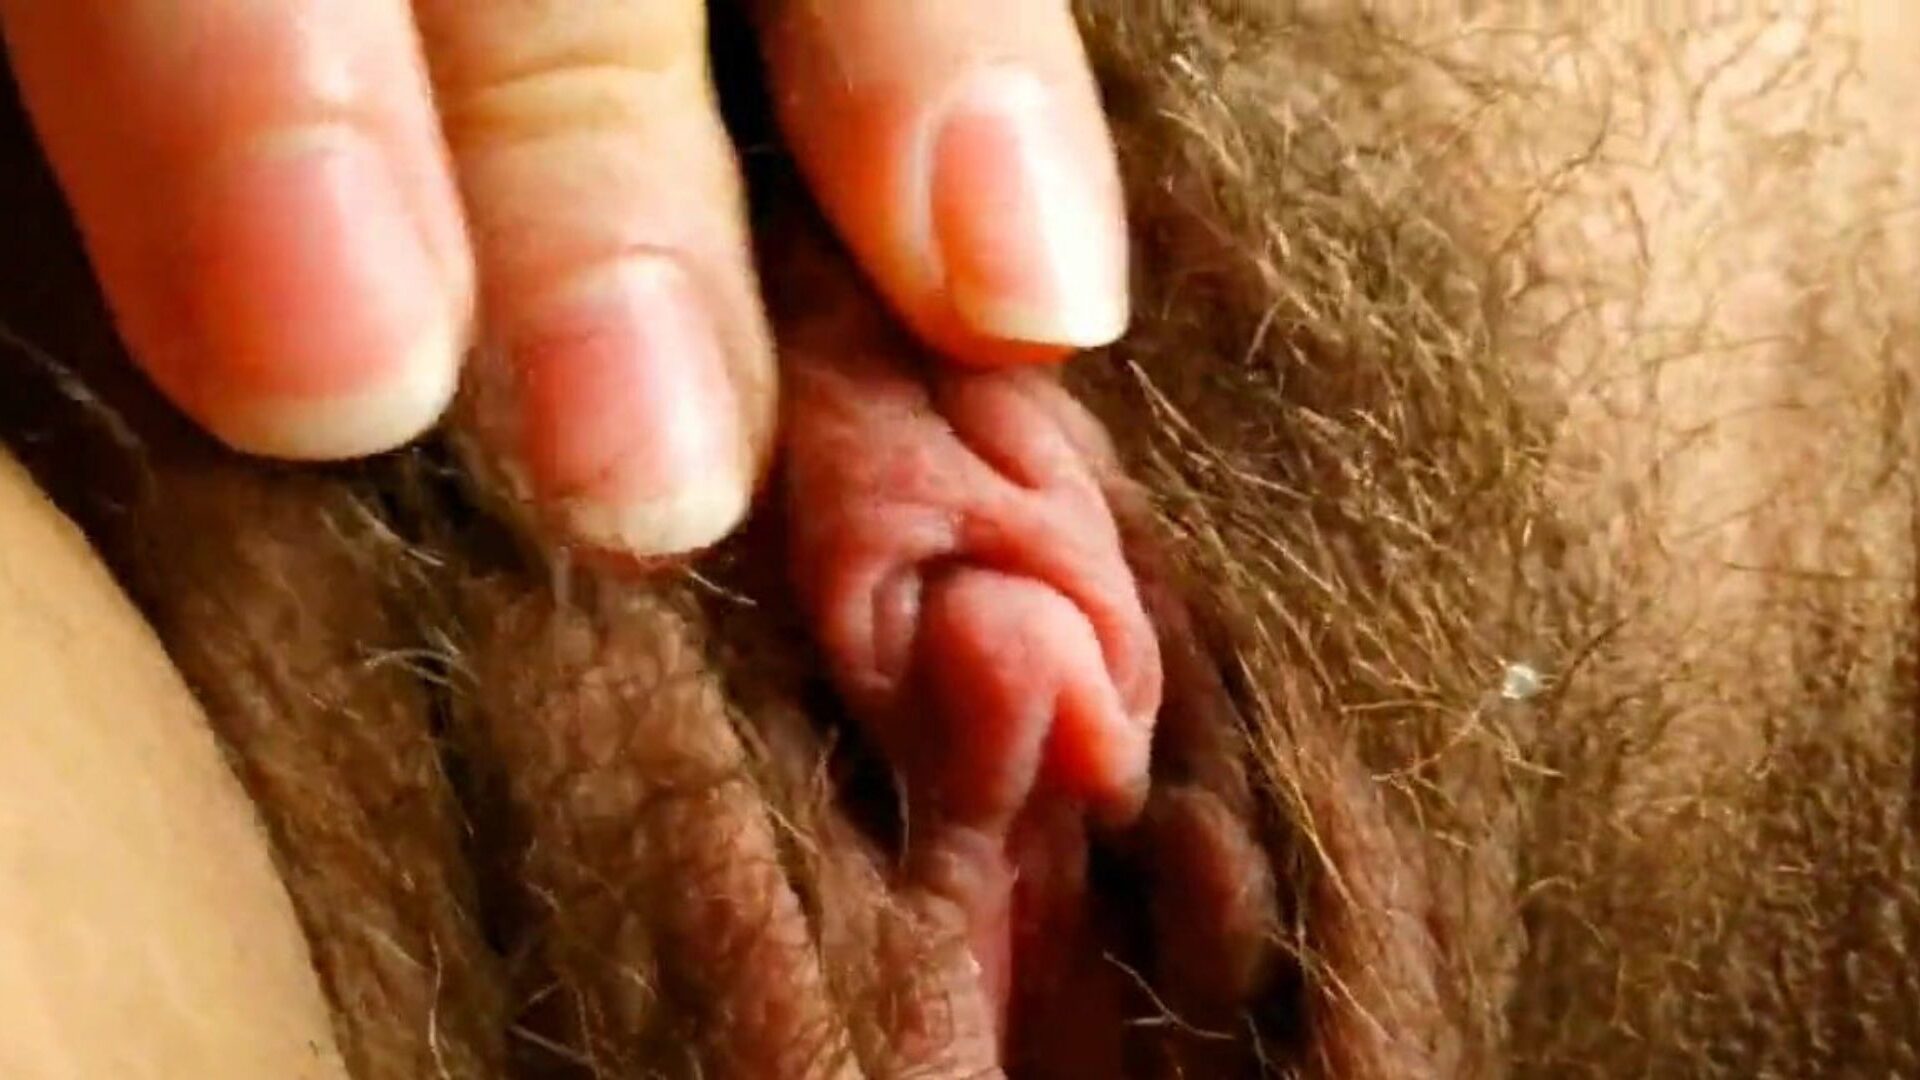 c'est le gros clitoris le plus sexy que vous ayez jamais vu: hd porn af watch c'est le gros clitoris le plus sexy que vous ayez jamais vu vidéo sur xhamster - la collection ultime de vidéos porno hardcore brésiliennes poilues hd hardcore